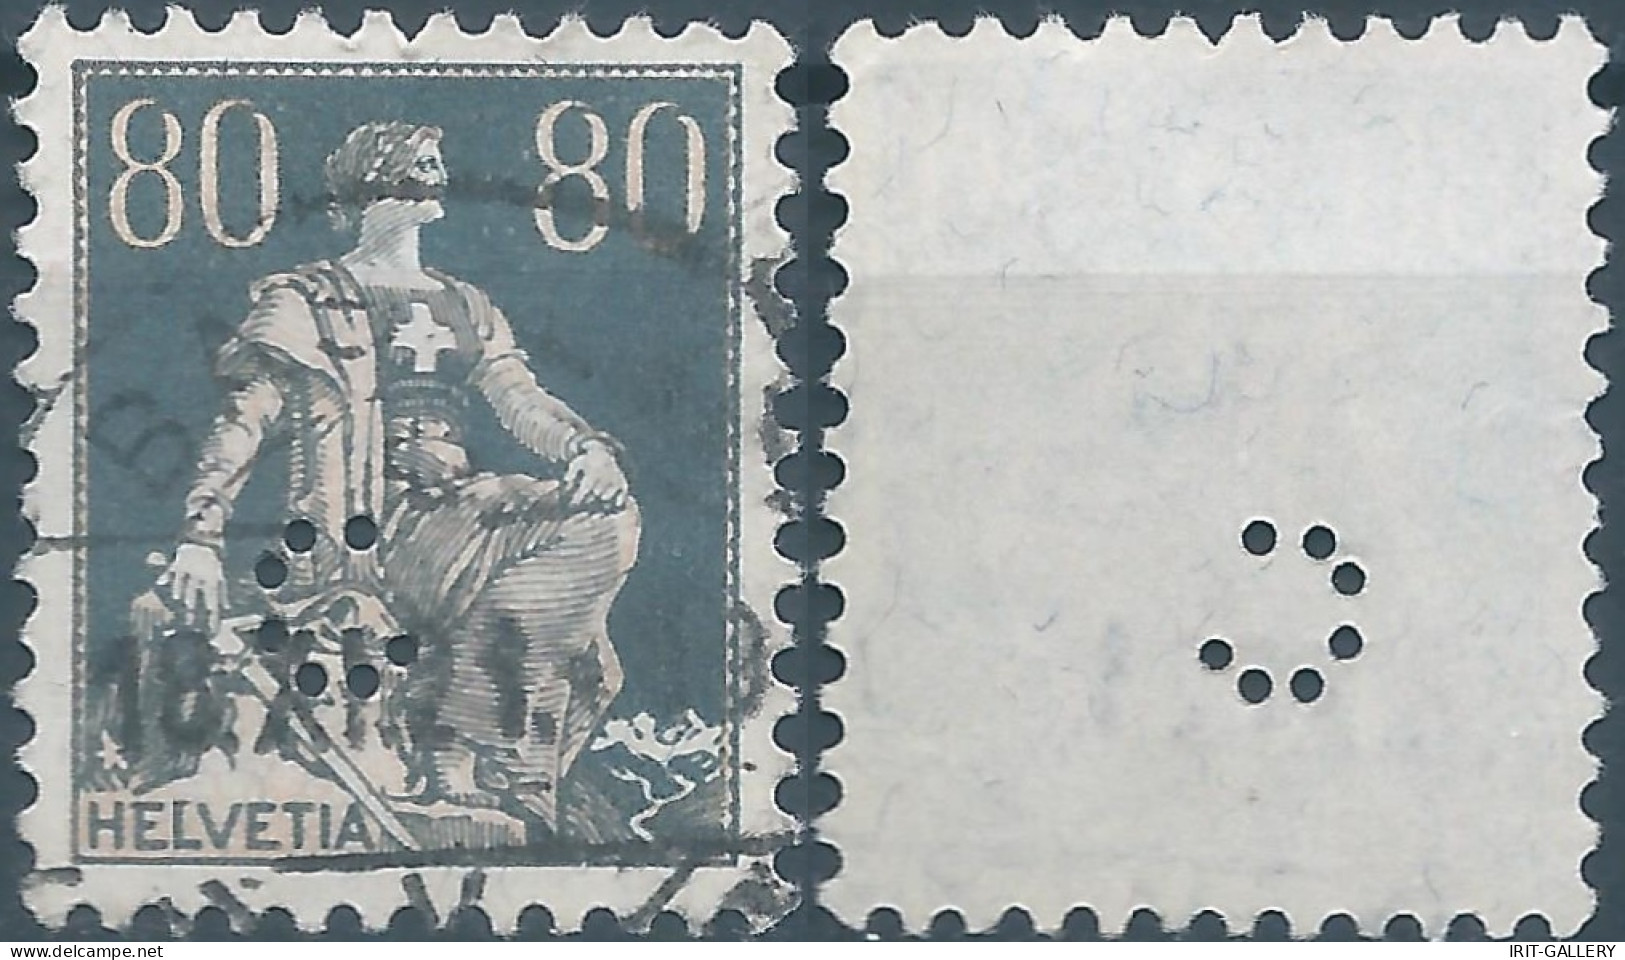 Svizzera-Switzerland-Schweiz-Suisse,HELVETIA,1915 -1918 , Helvetia With The Sword 80(C)grey (PERFIN) - Perforadas